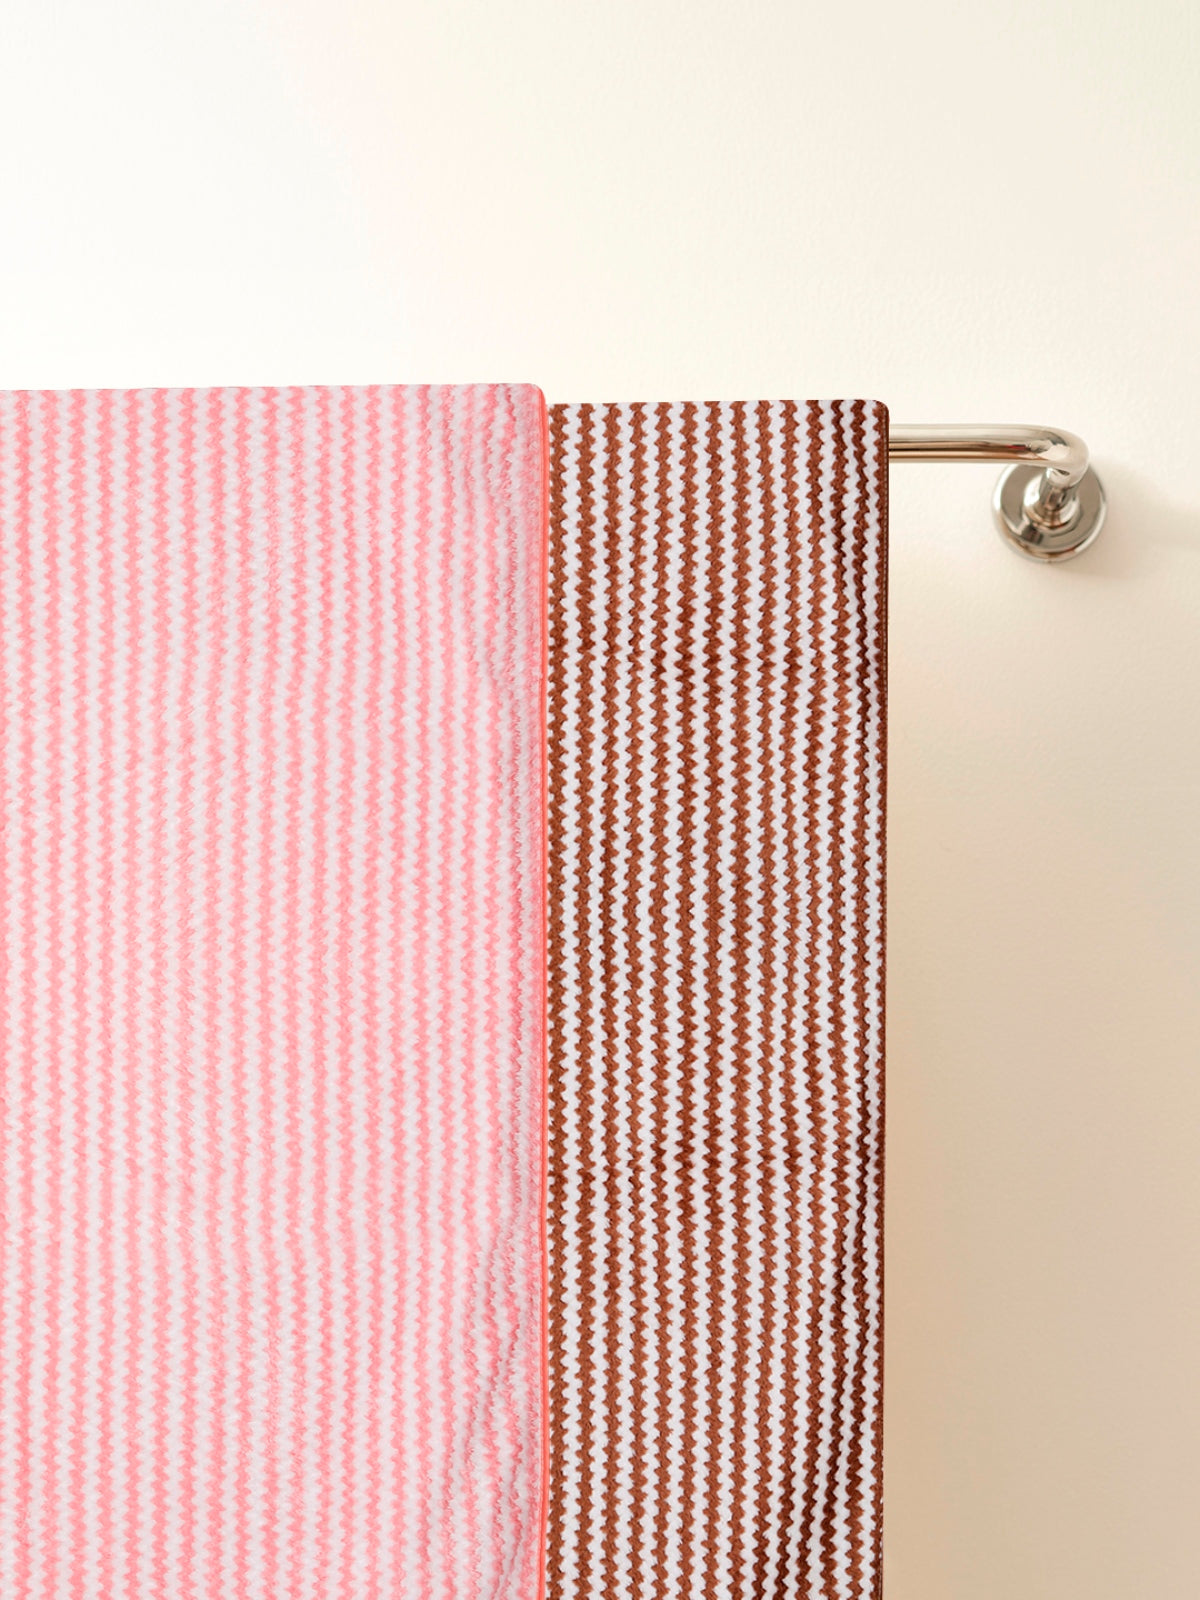 Set of 3 Pink & Brown Solid Microfiber Towels